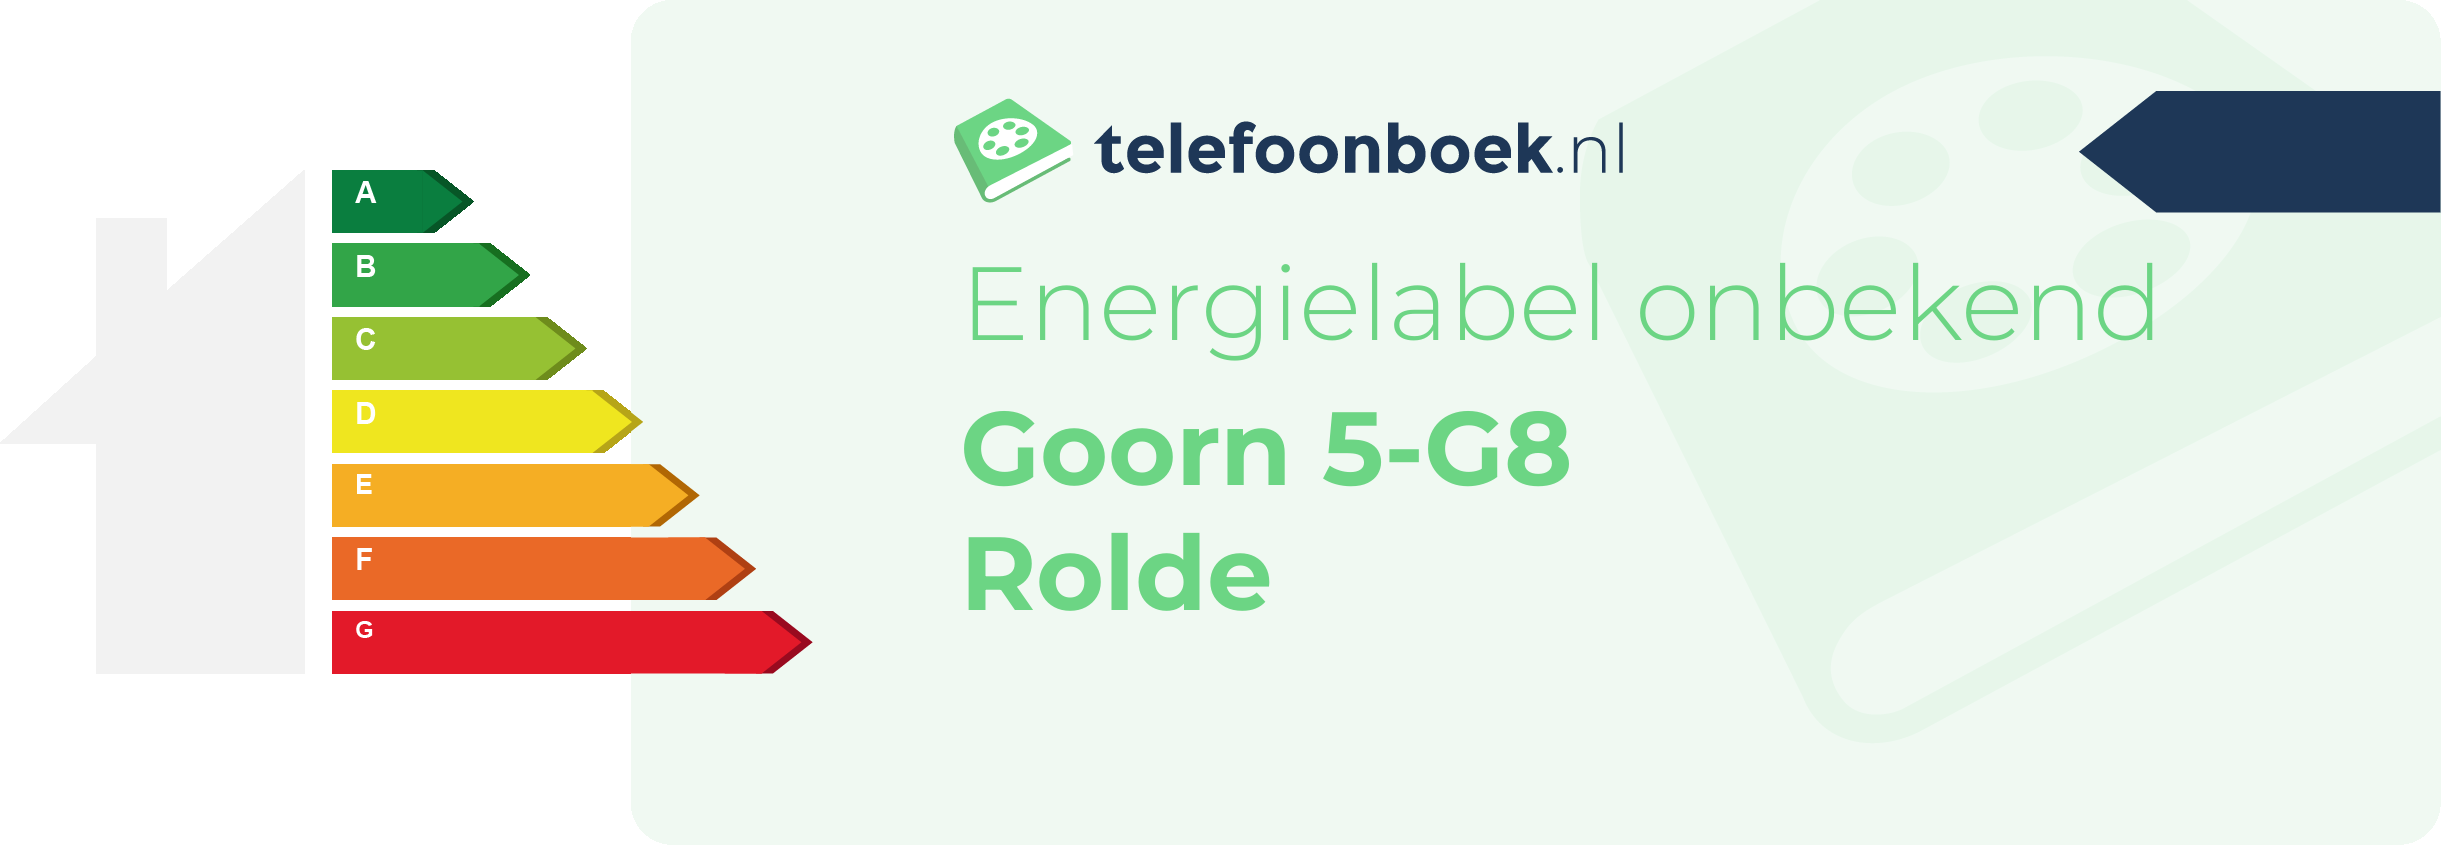 Energielabel Goorn 5-G8 Rolde